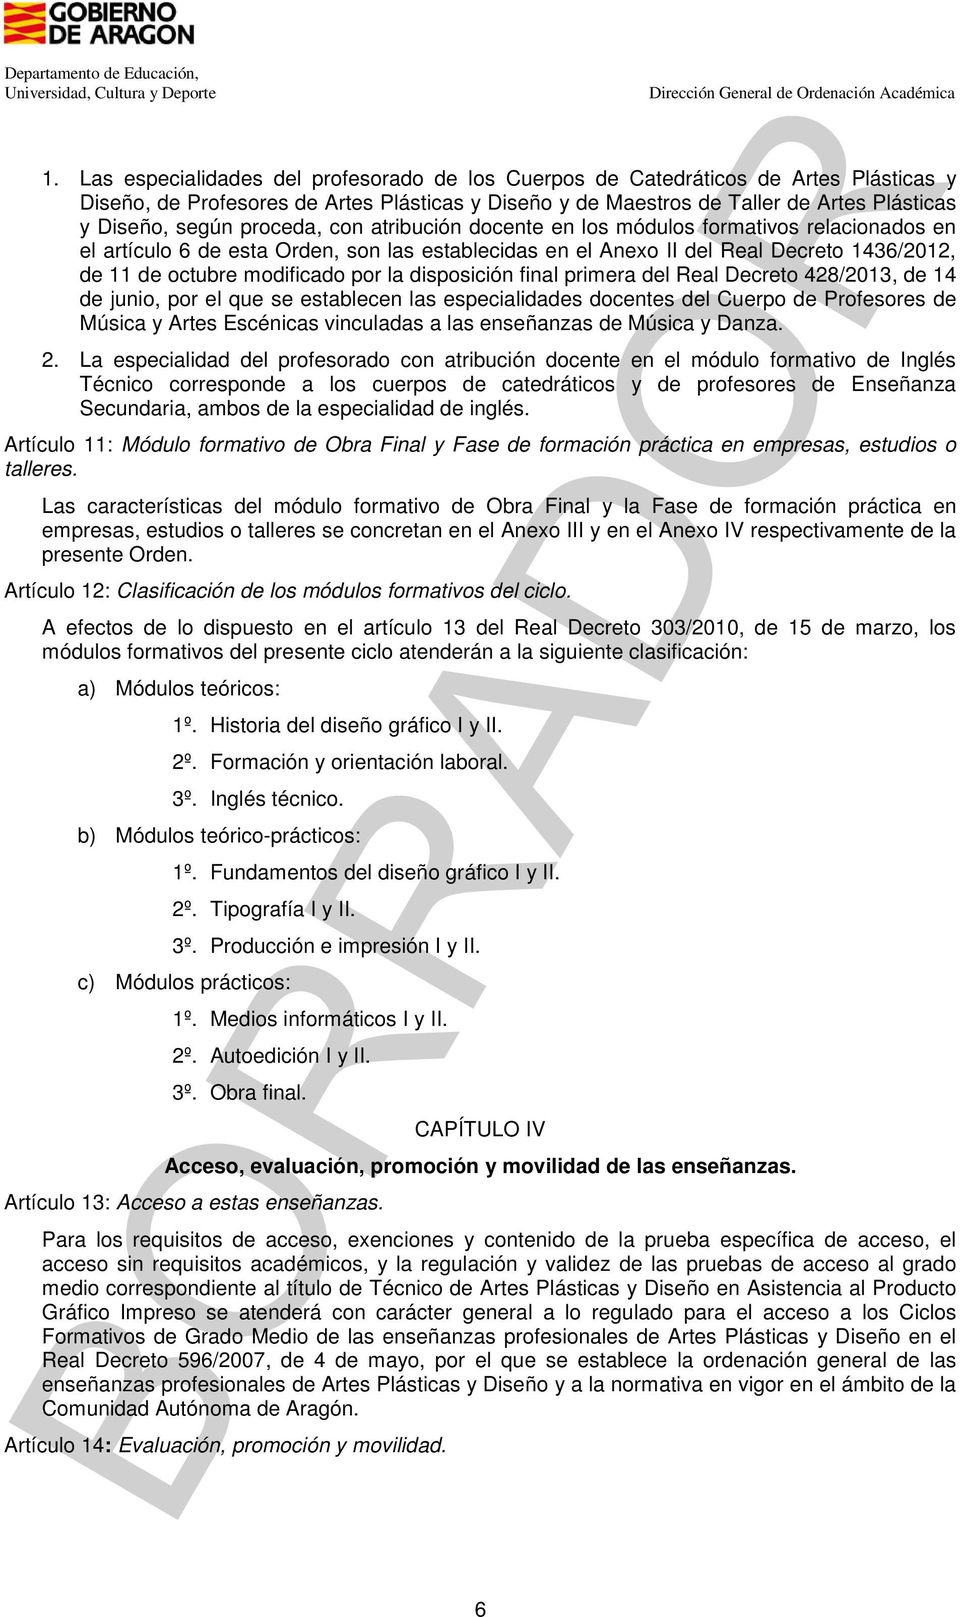 la disposición final primera del Real Decreto 428/2013, de 14 de junio, por el que se establecen las especialidades docentes del Cuerpo de Profesores de Música y Artes Escénicas vinculadas a las